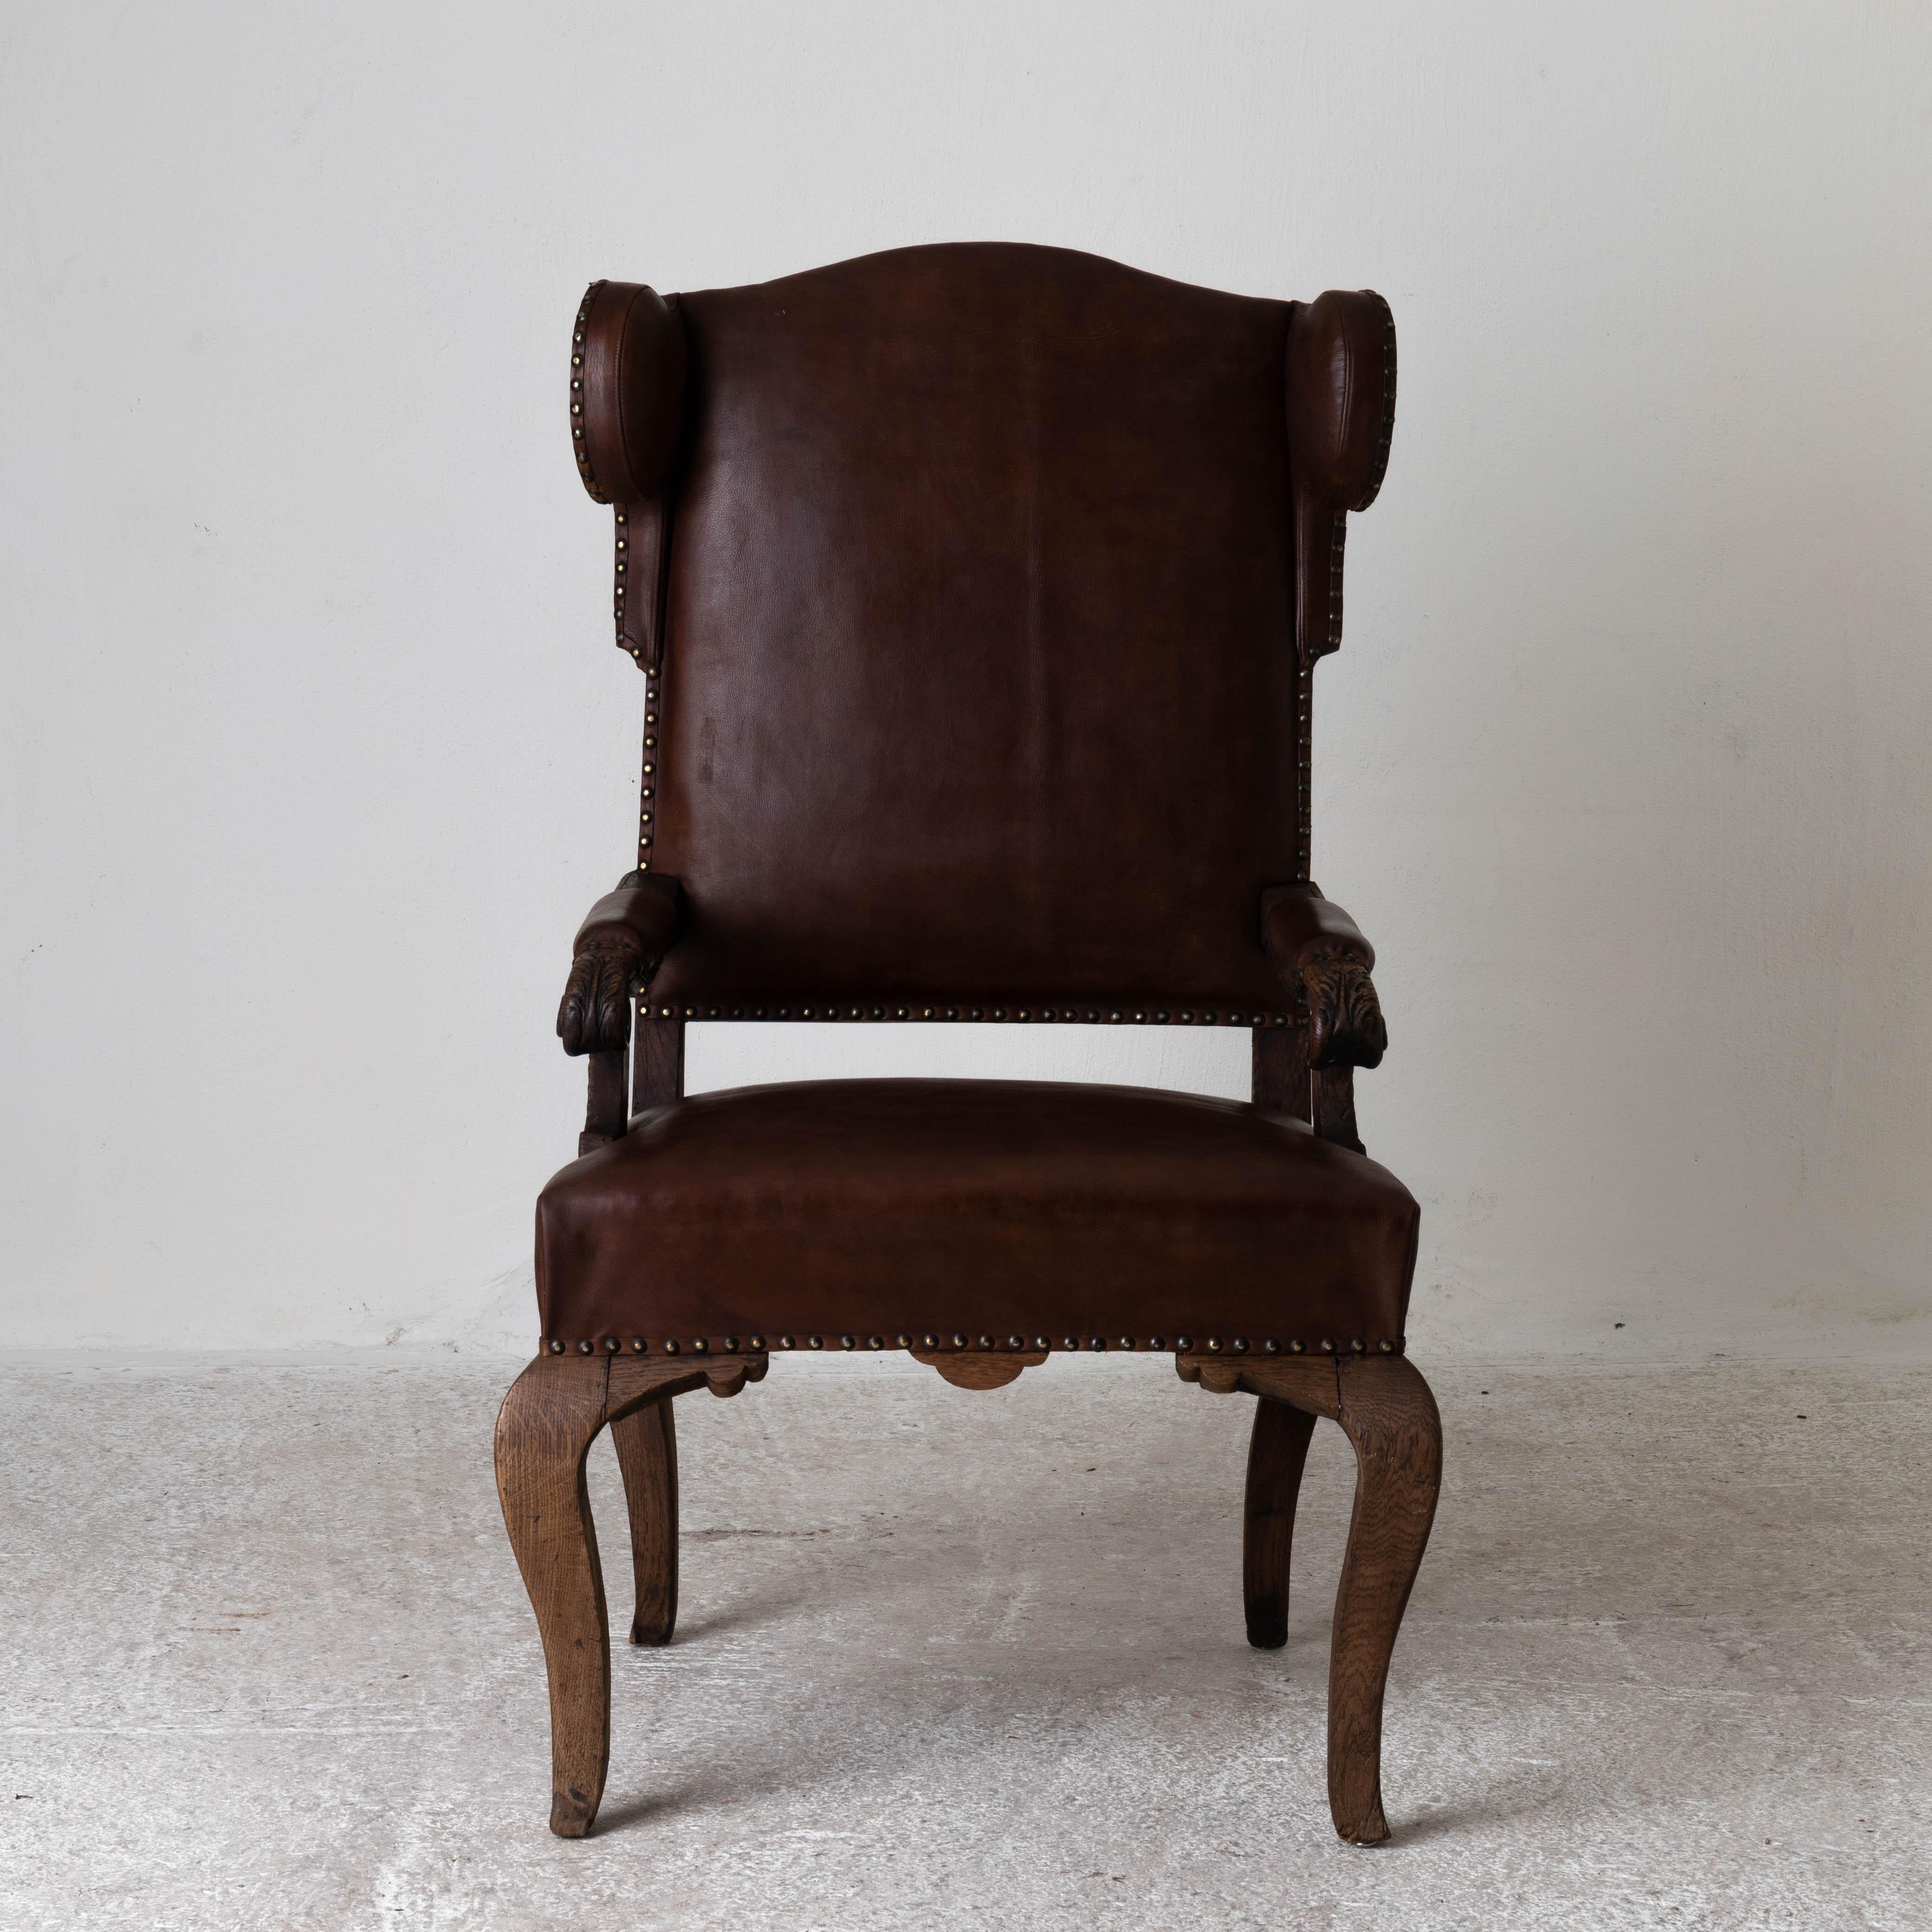 Chaise française Wingback Période rococo France. Chaise à oreilles fabriquée pendant la période rococo en France de 1720 à 1750. Finition originale et rembourrage en cuir brun ciré. 

Mesures : H : 47.8

W : 25